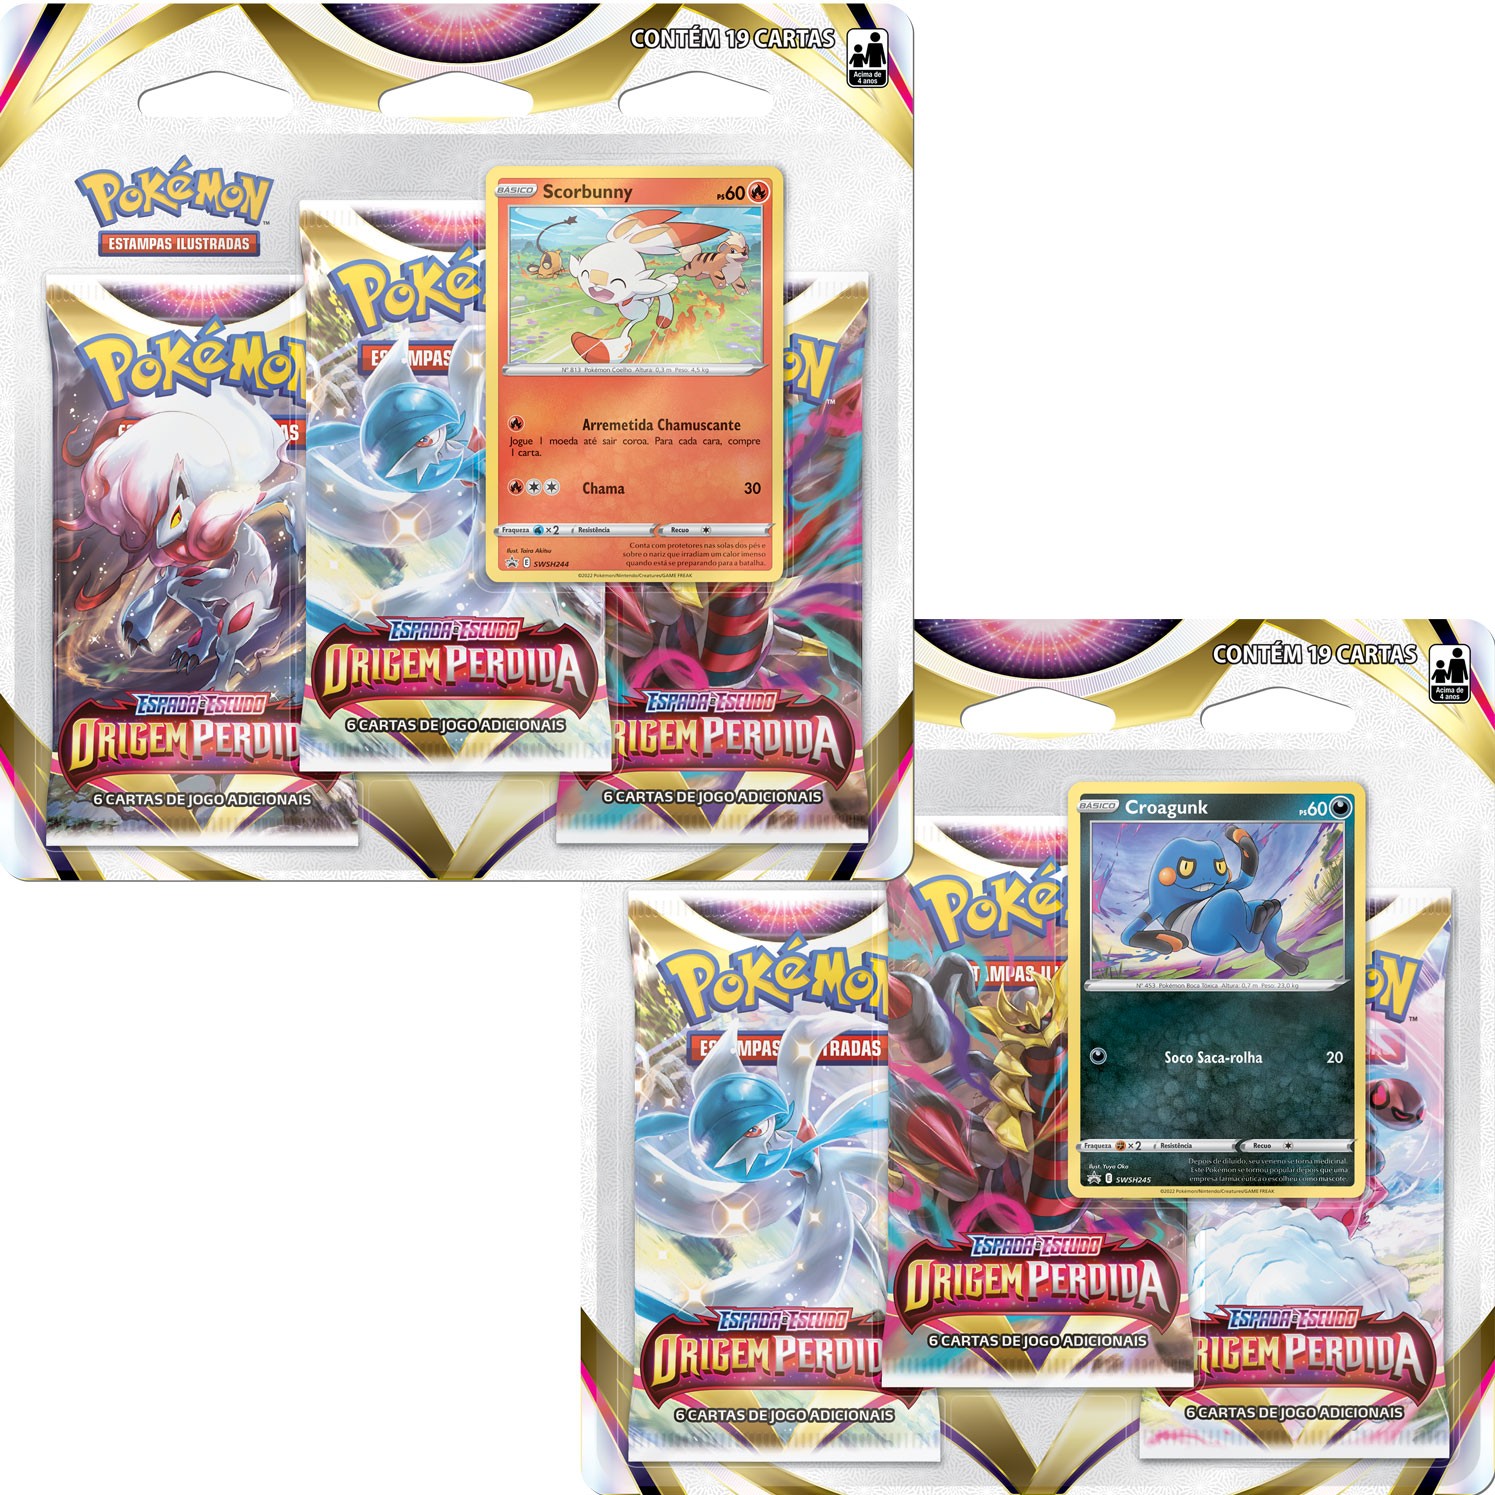 Triple Pack Pokémon Cards XY Turbo Revolução Sableye - Copag - A